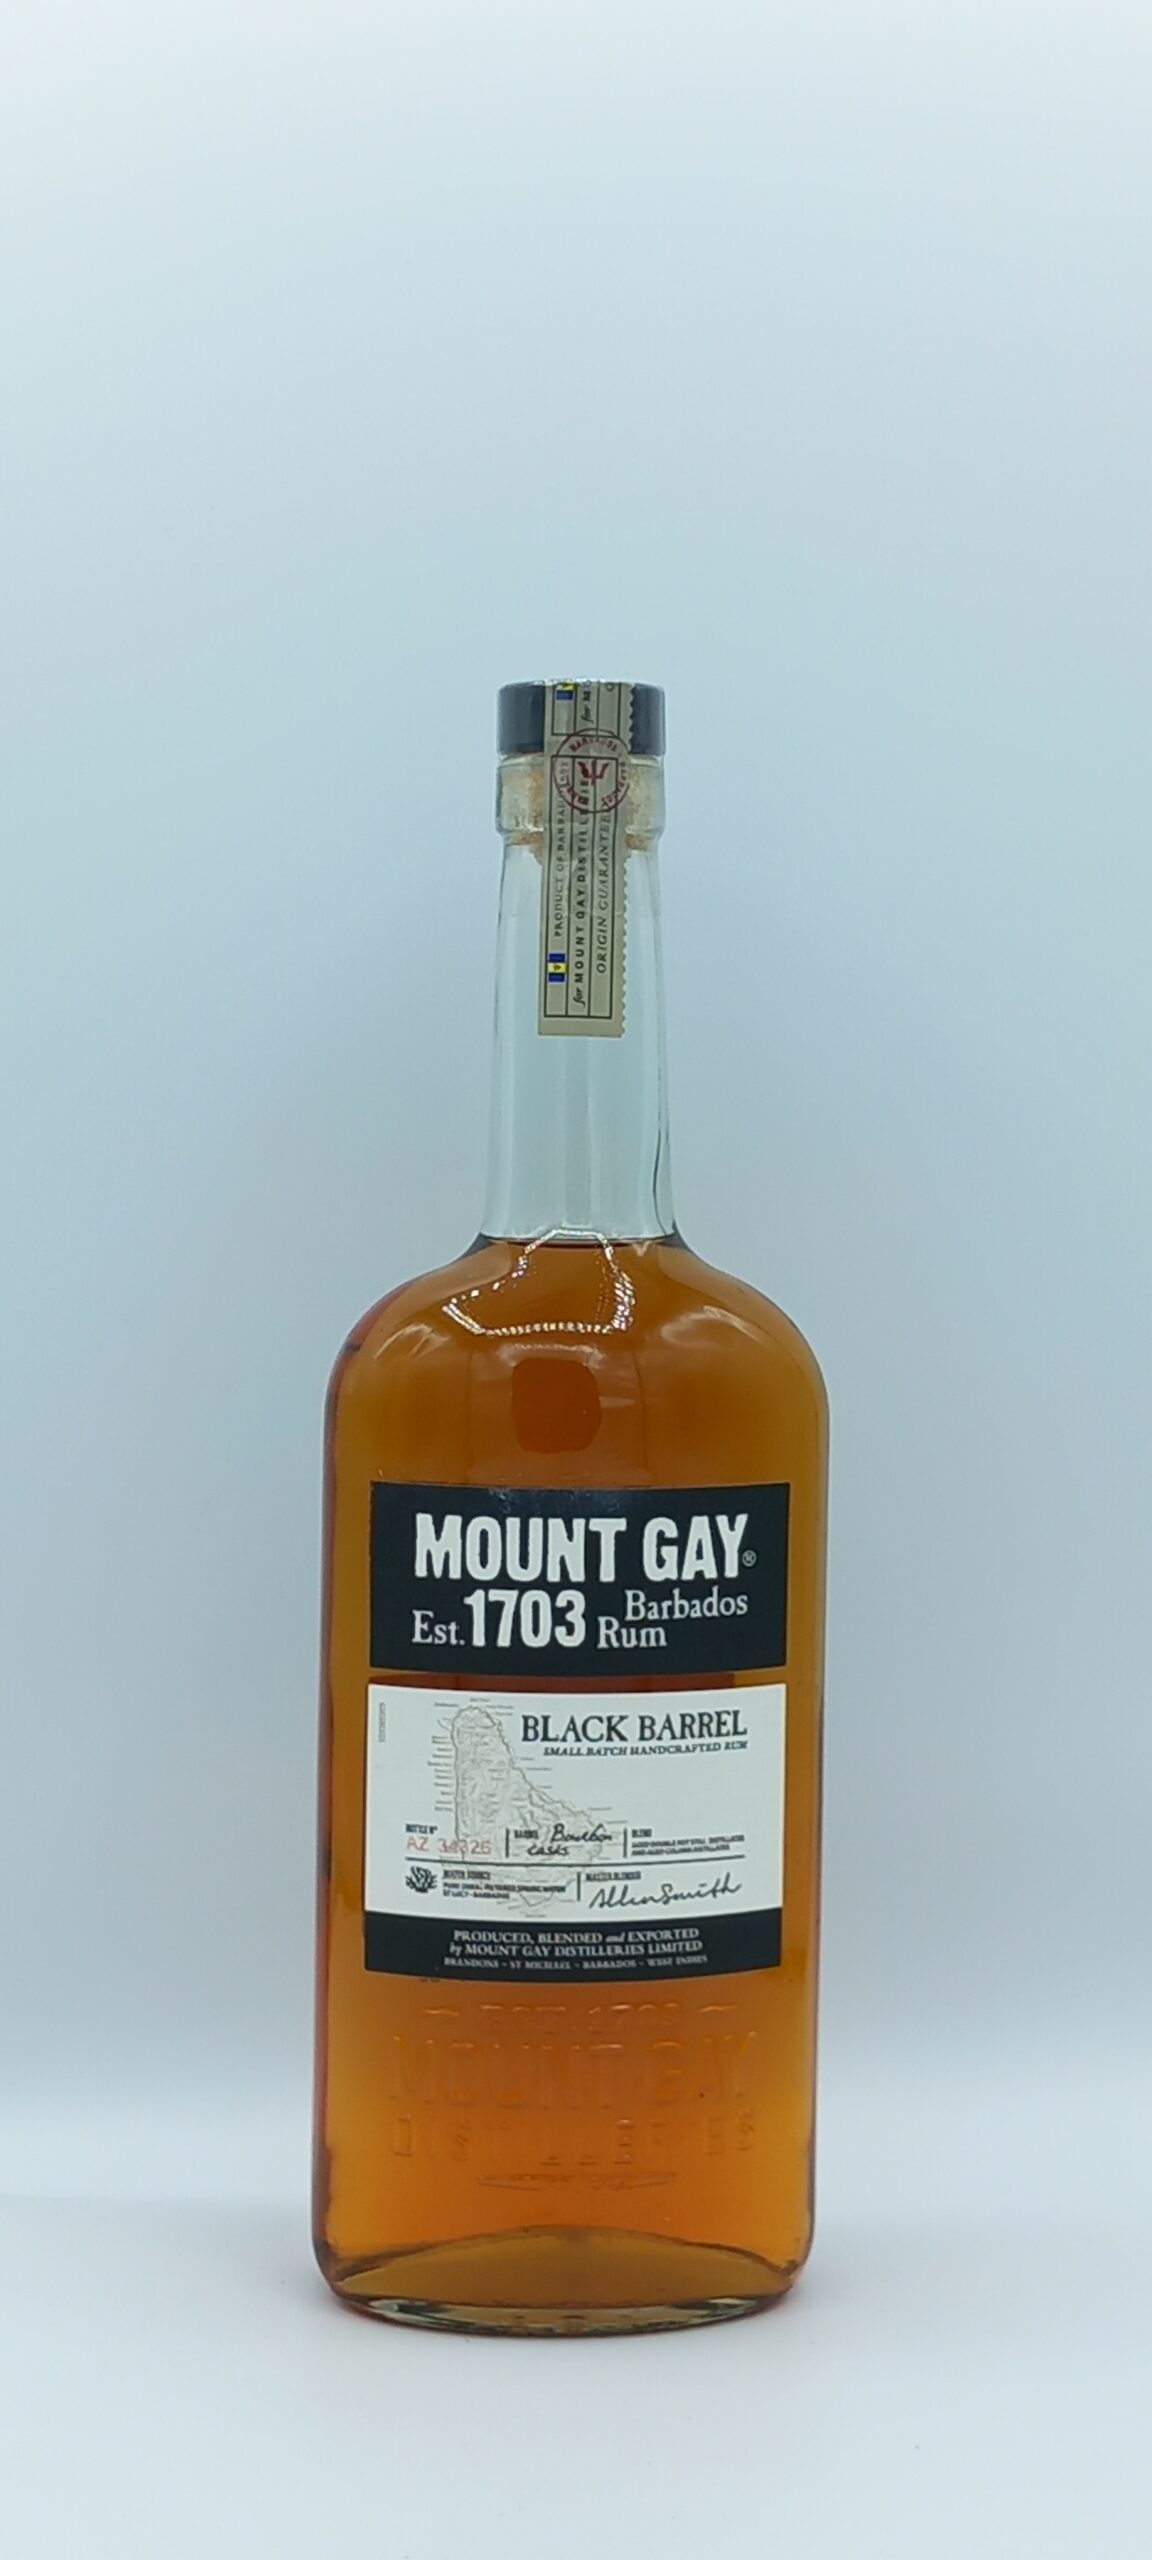 Rhum Mount Gay Black Barrel – La Barbade